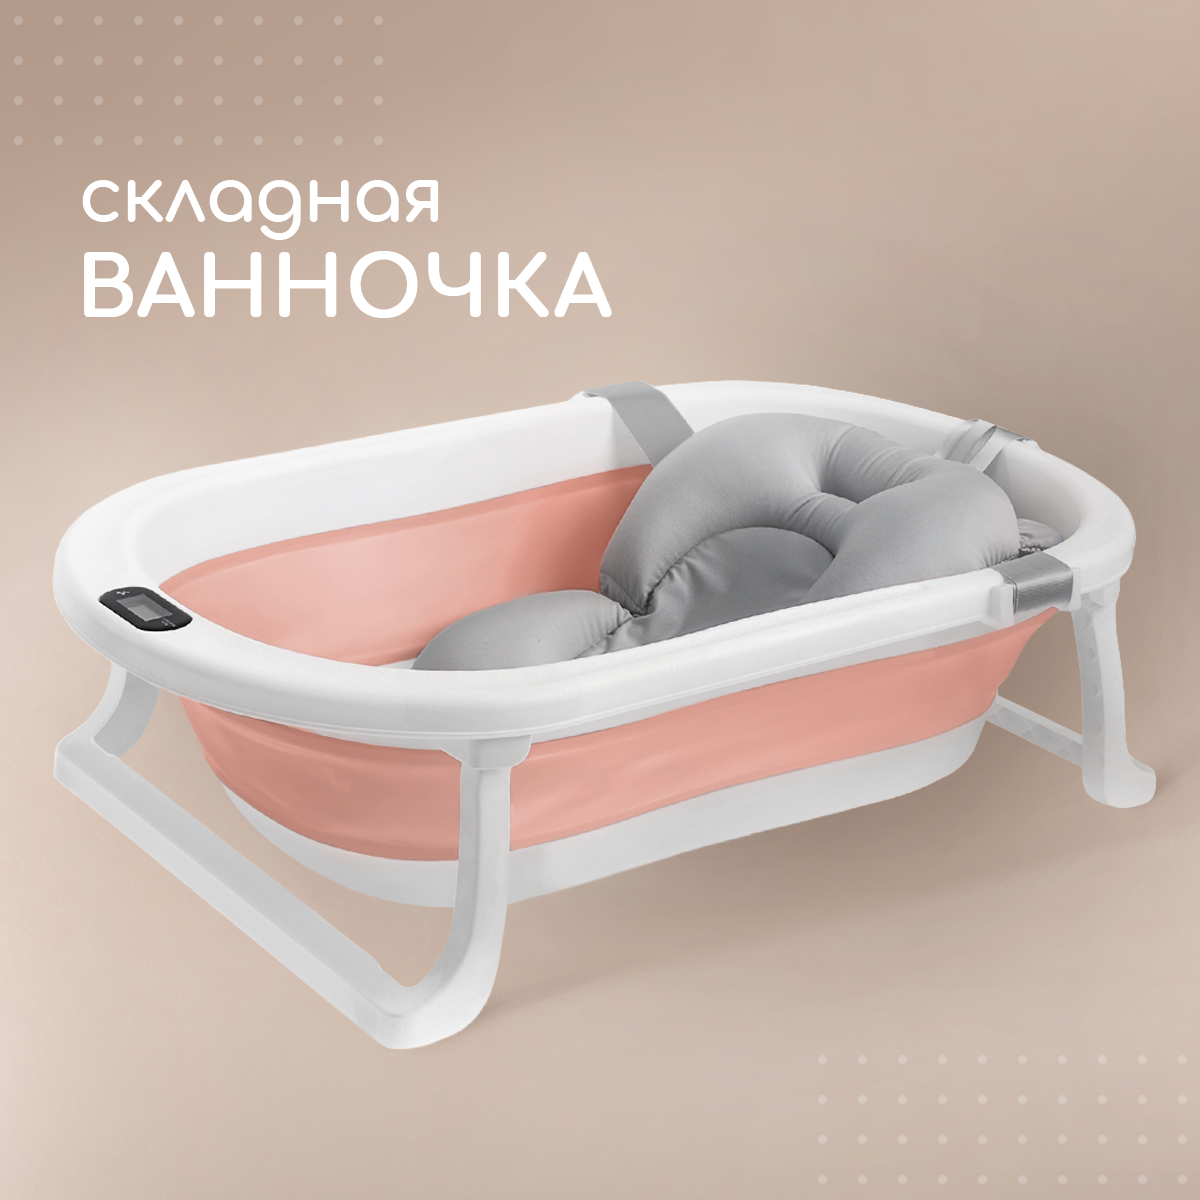 Ванночка для новорожденных Miyoumi с матрасиком и термометром складная - Blush - фото 1